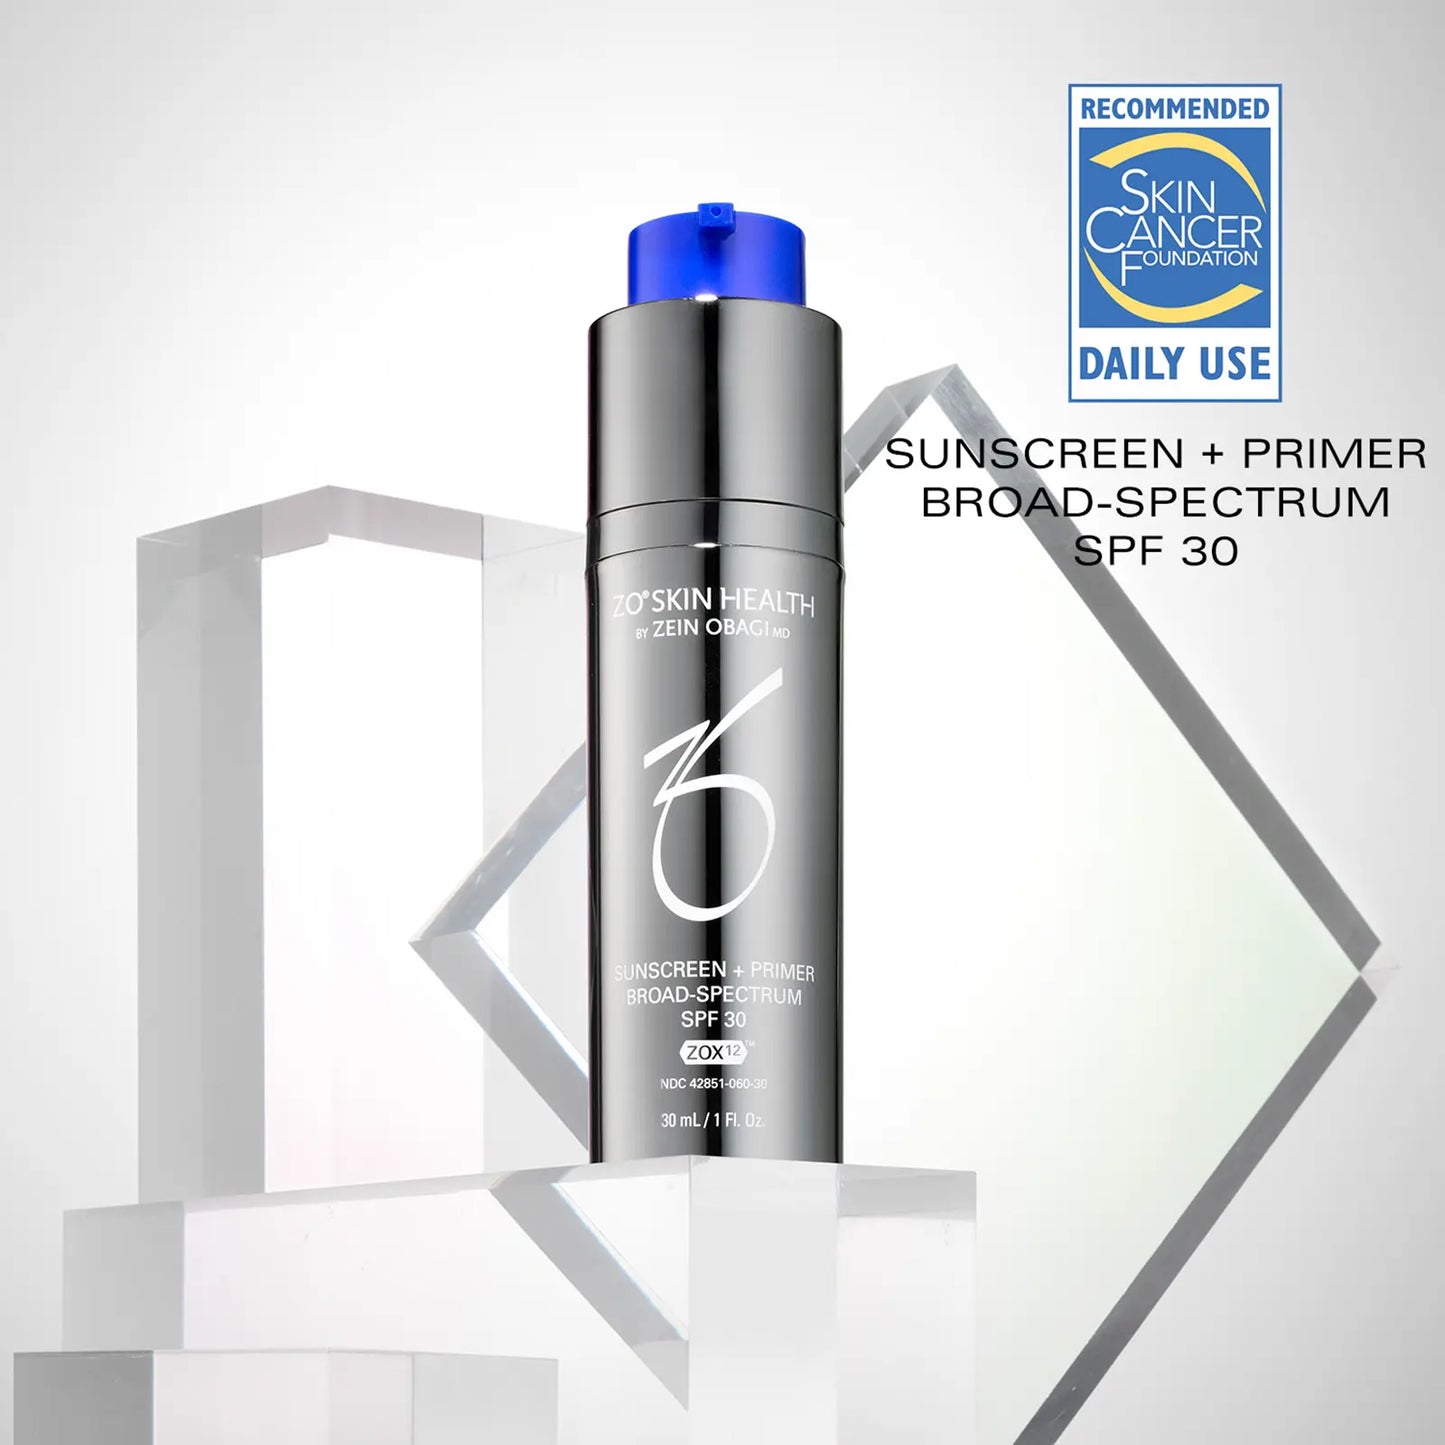 ZO Skin Health Sunscreen + Primer Broad-Spectrum SPF 30 30 mL / 1 Fl. Oz.